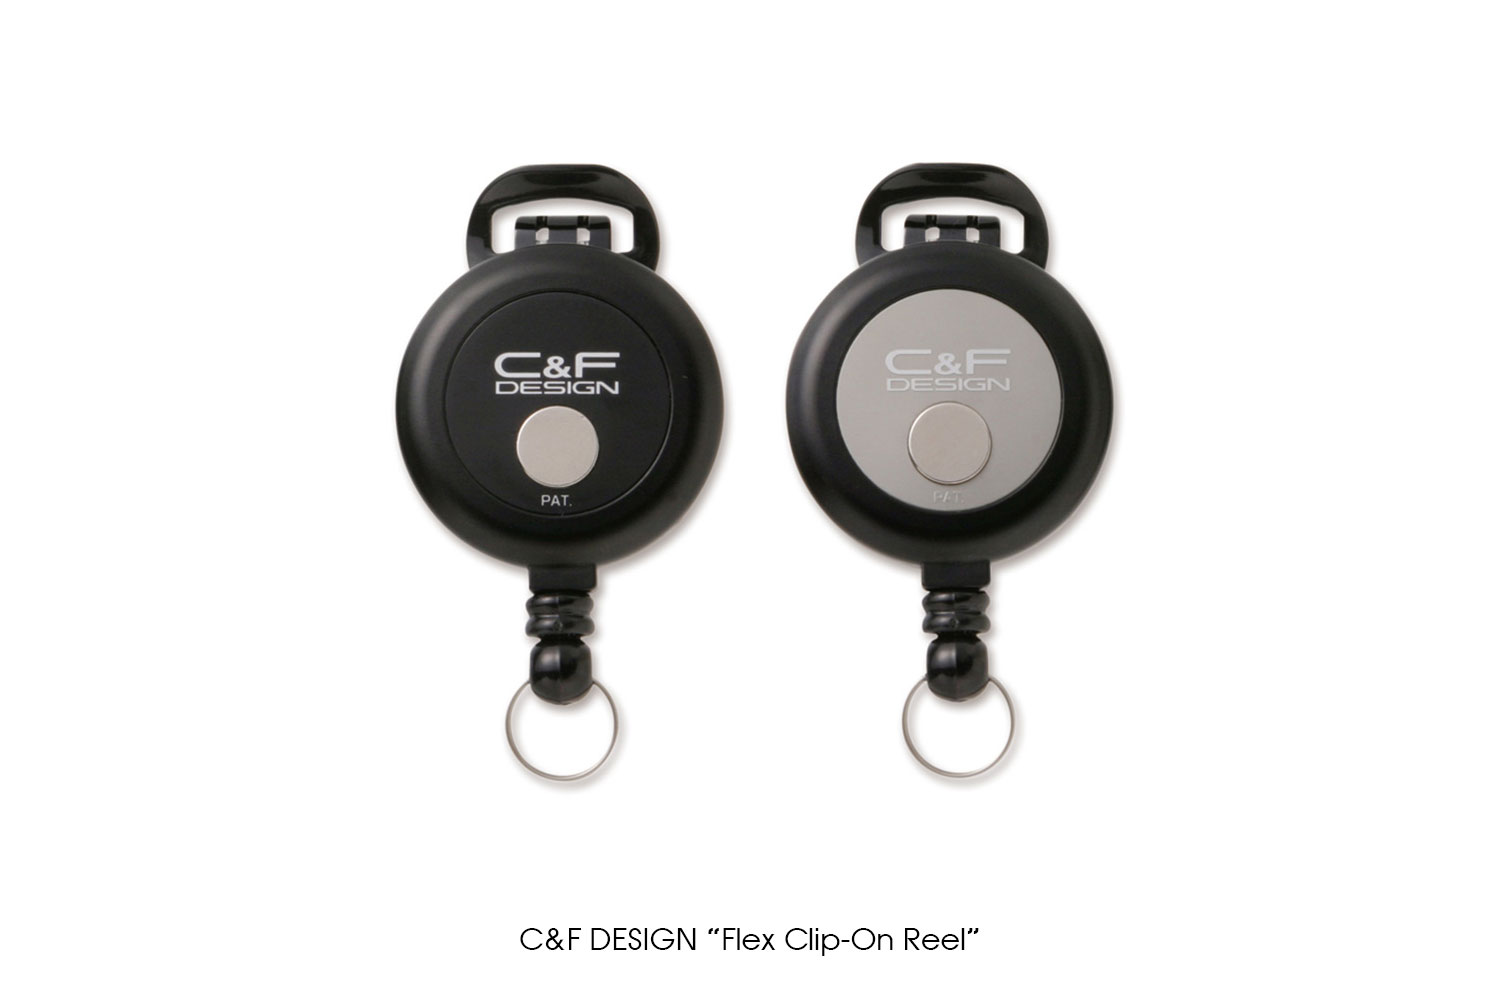 C&F DESIGN "Flex Clip-On Reel"